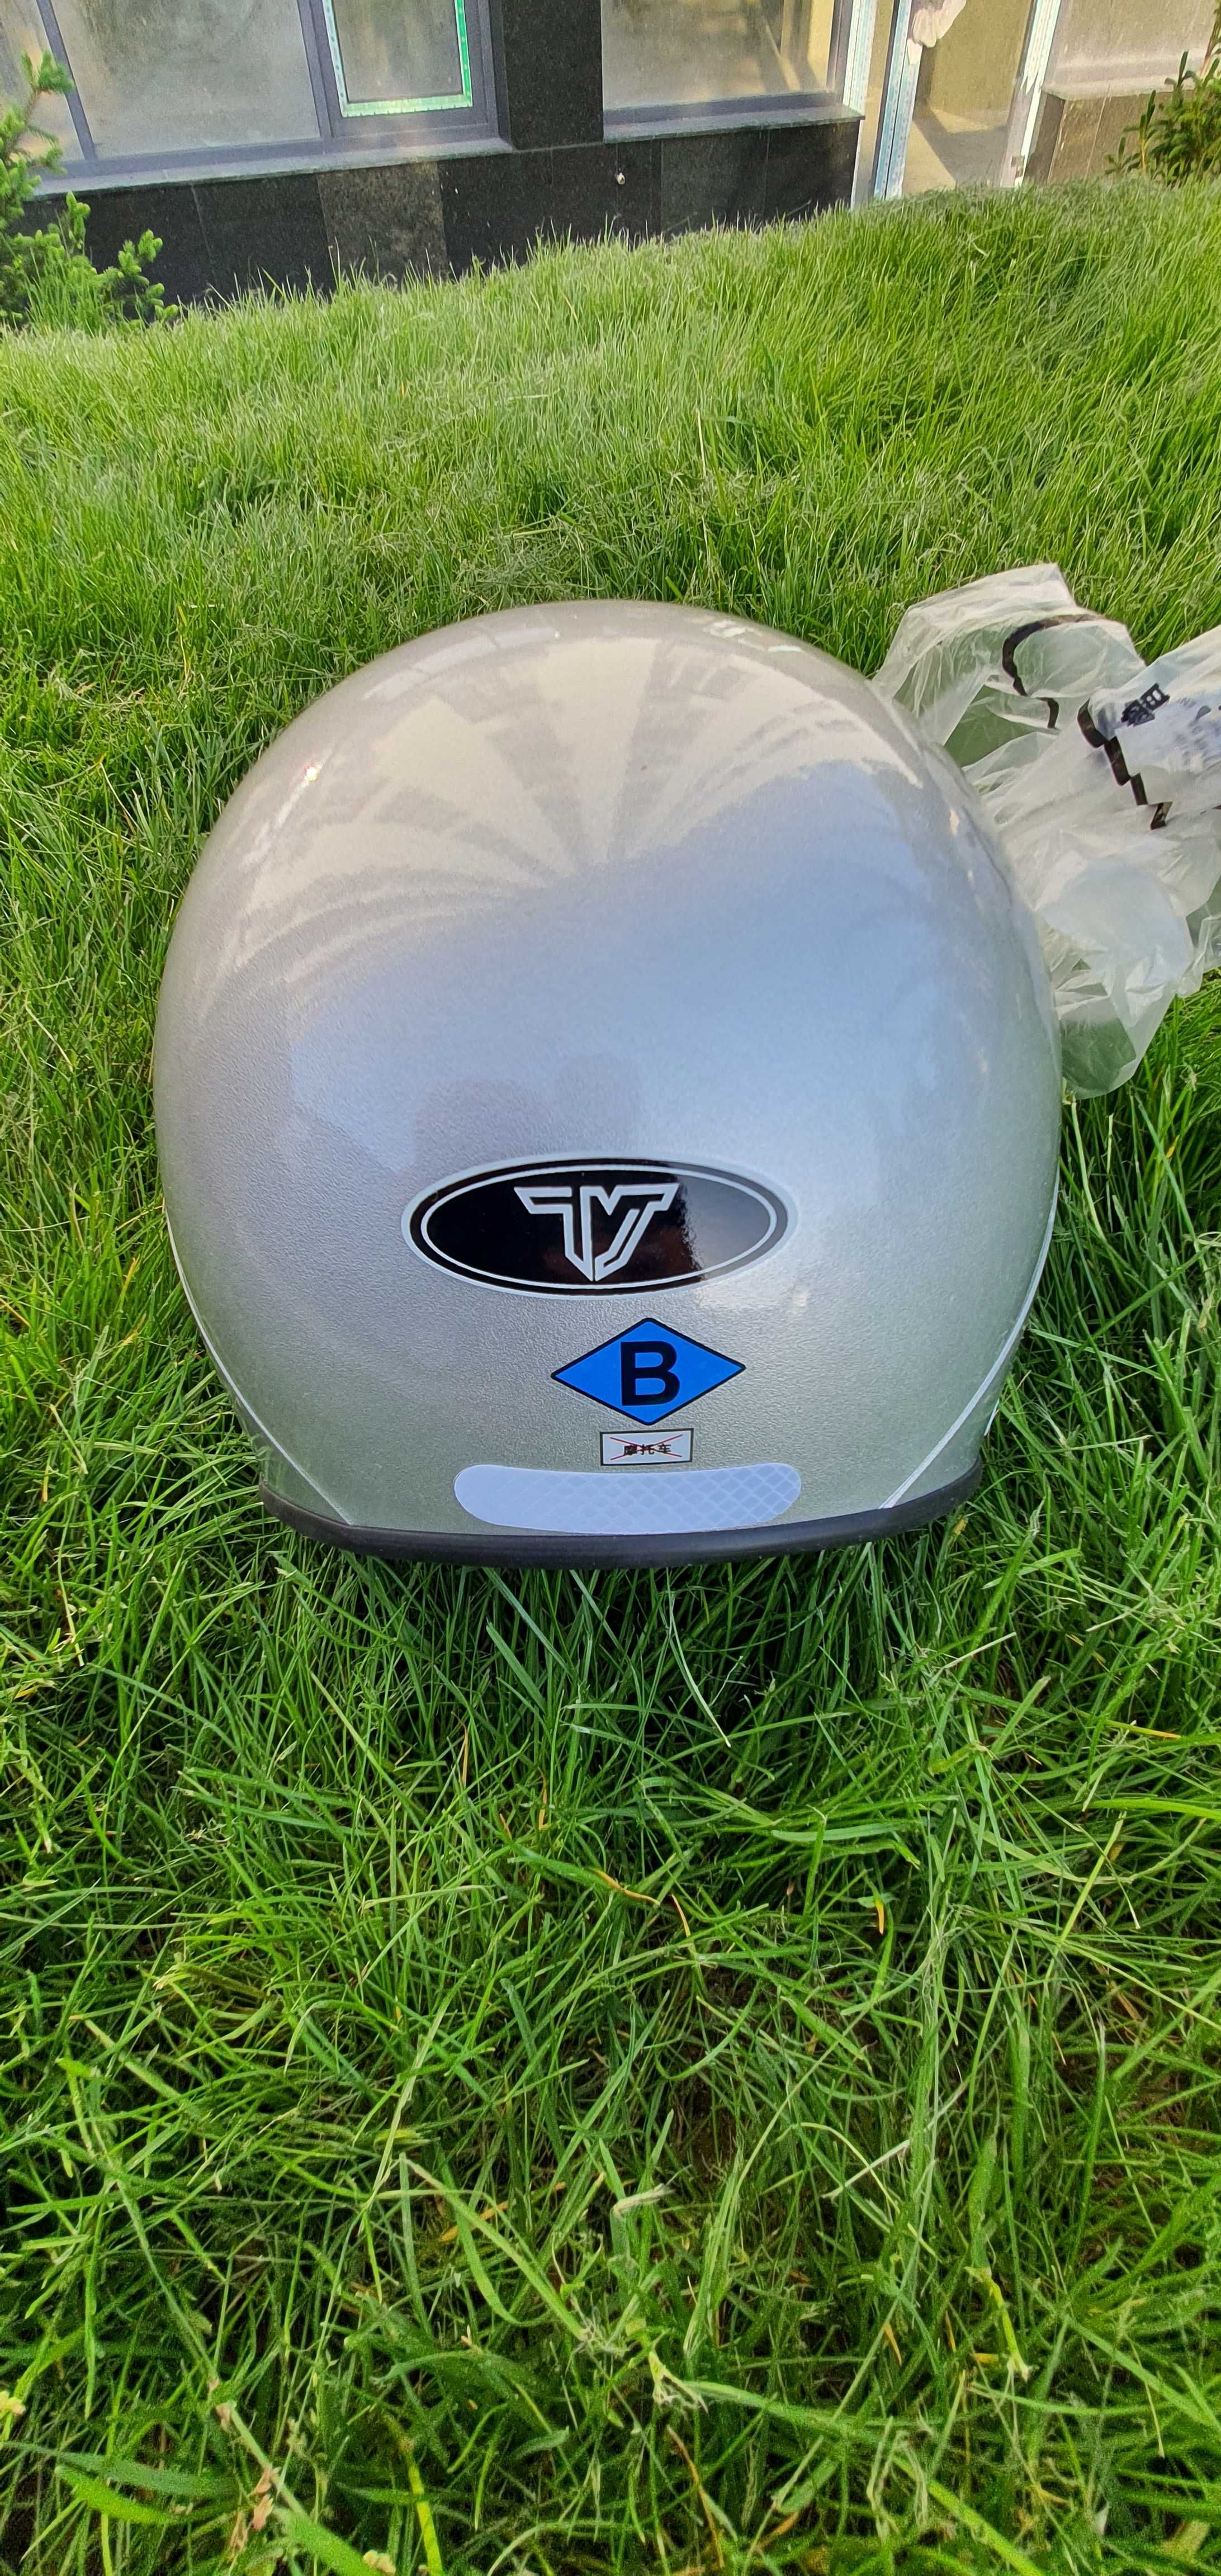 Шлем Bull для защиты головы при управлении велосипедом, мотопеда